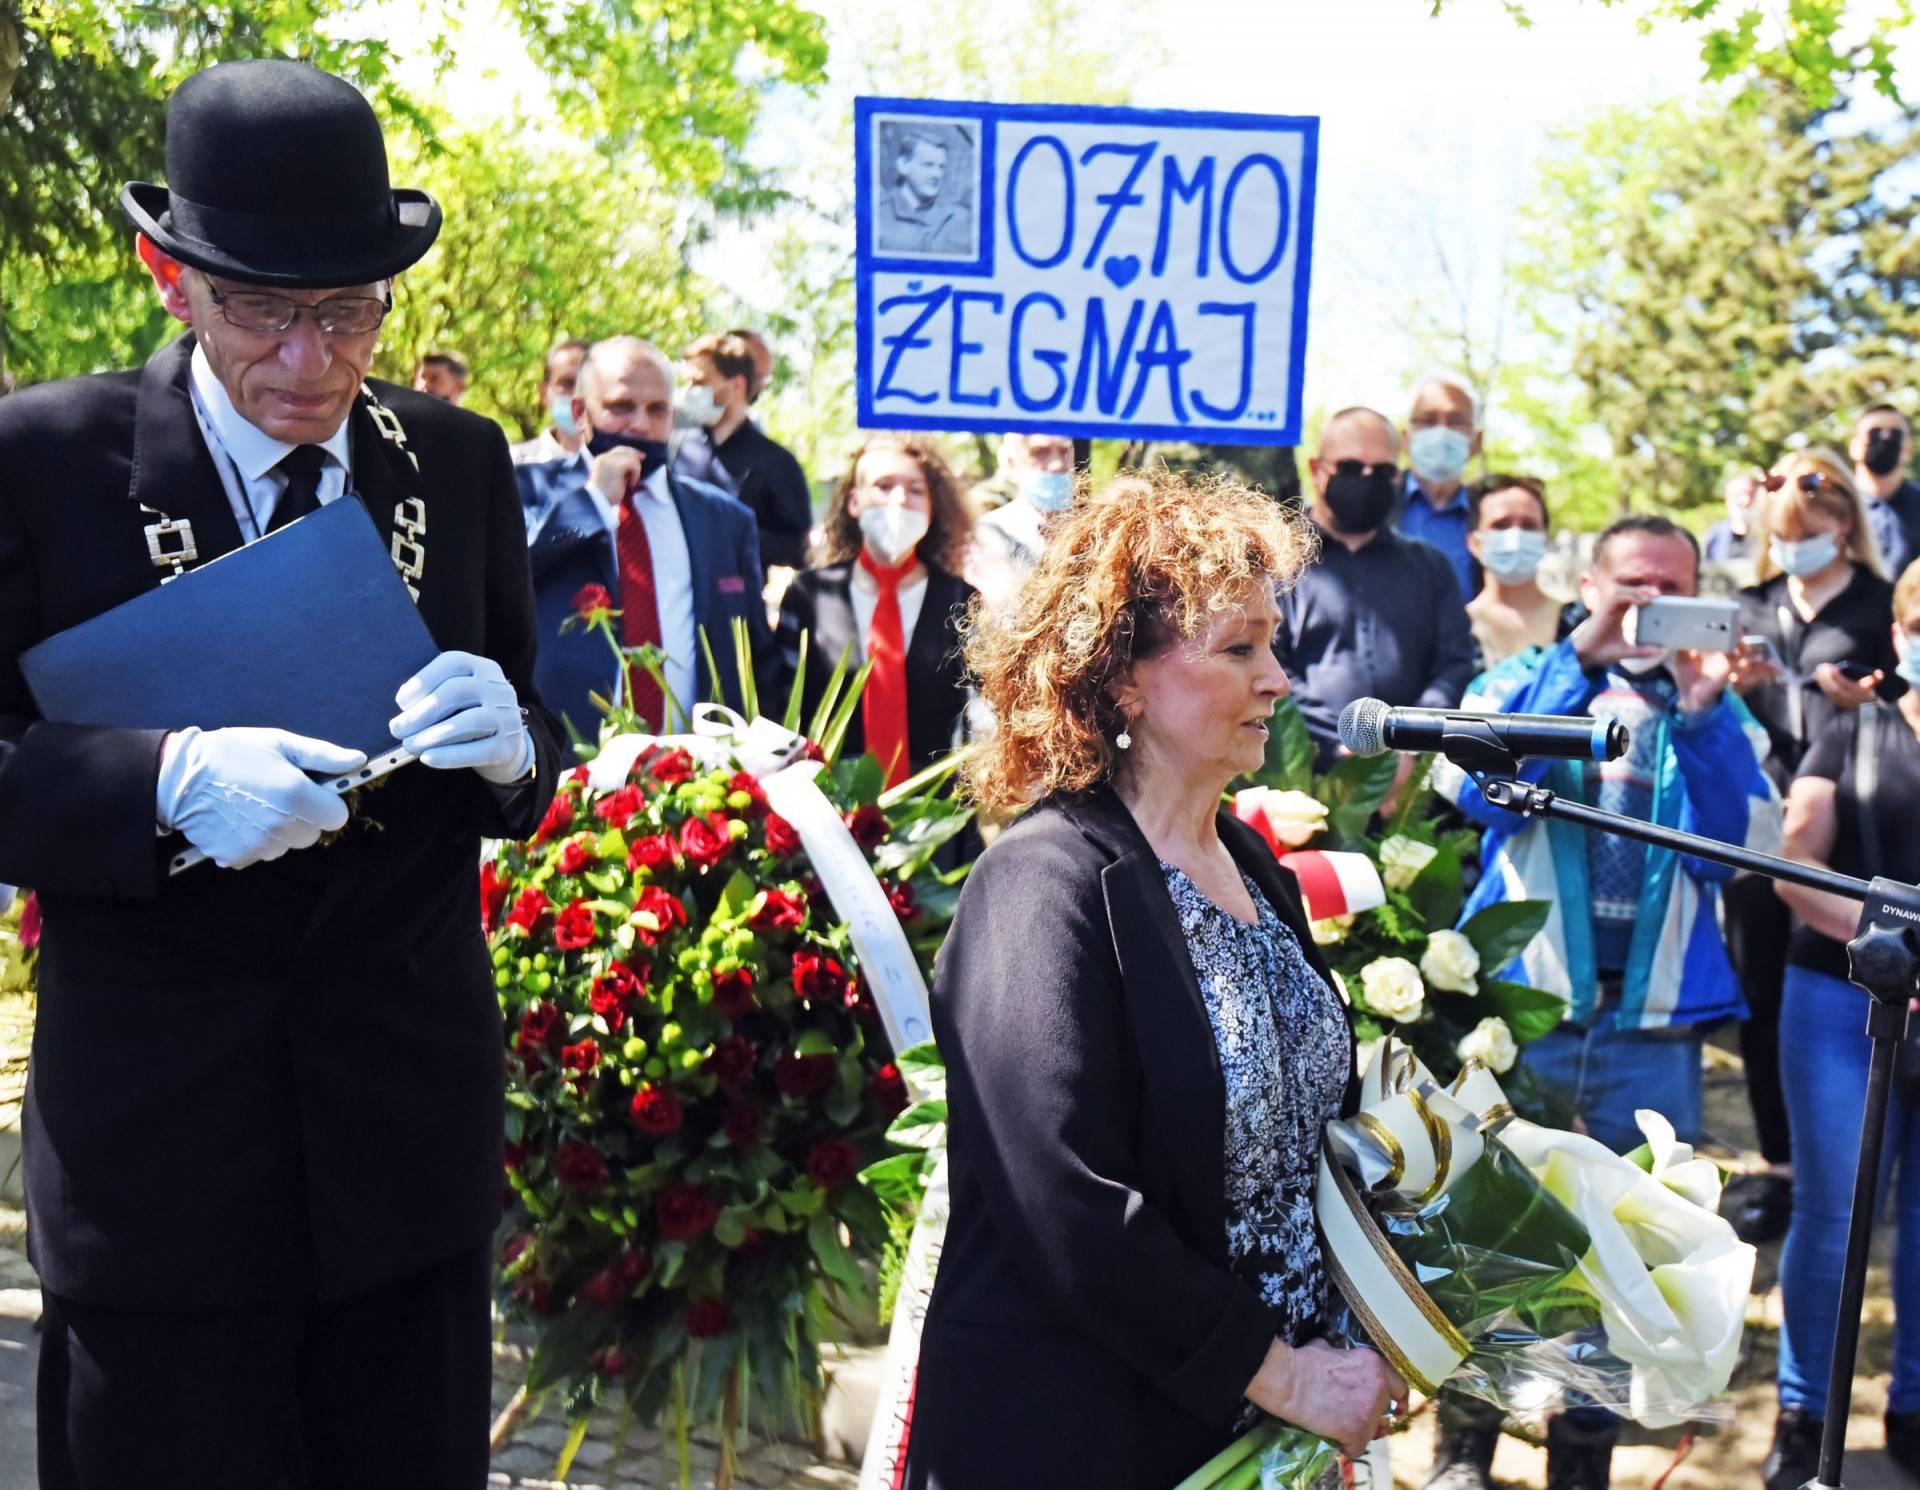 Tłumy na pogrzebie Bronisława Cieślaka. Żegnaj 07...